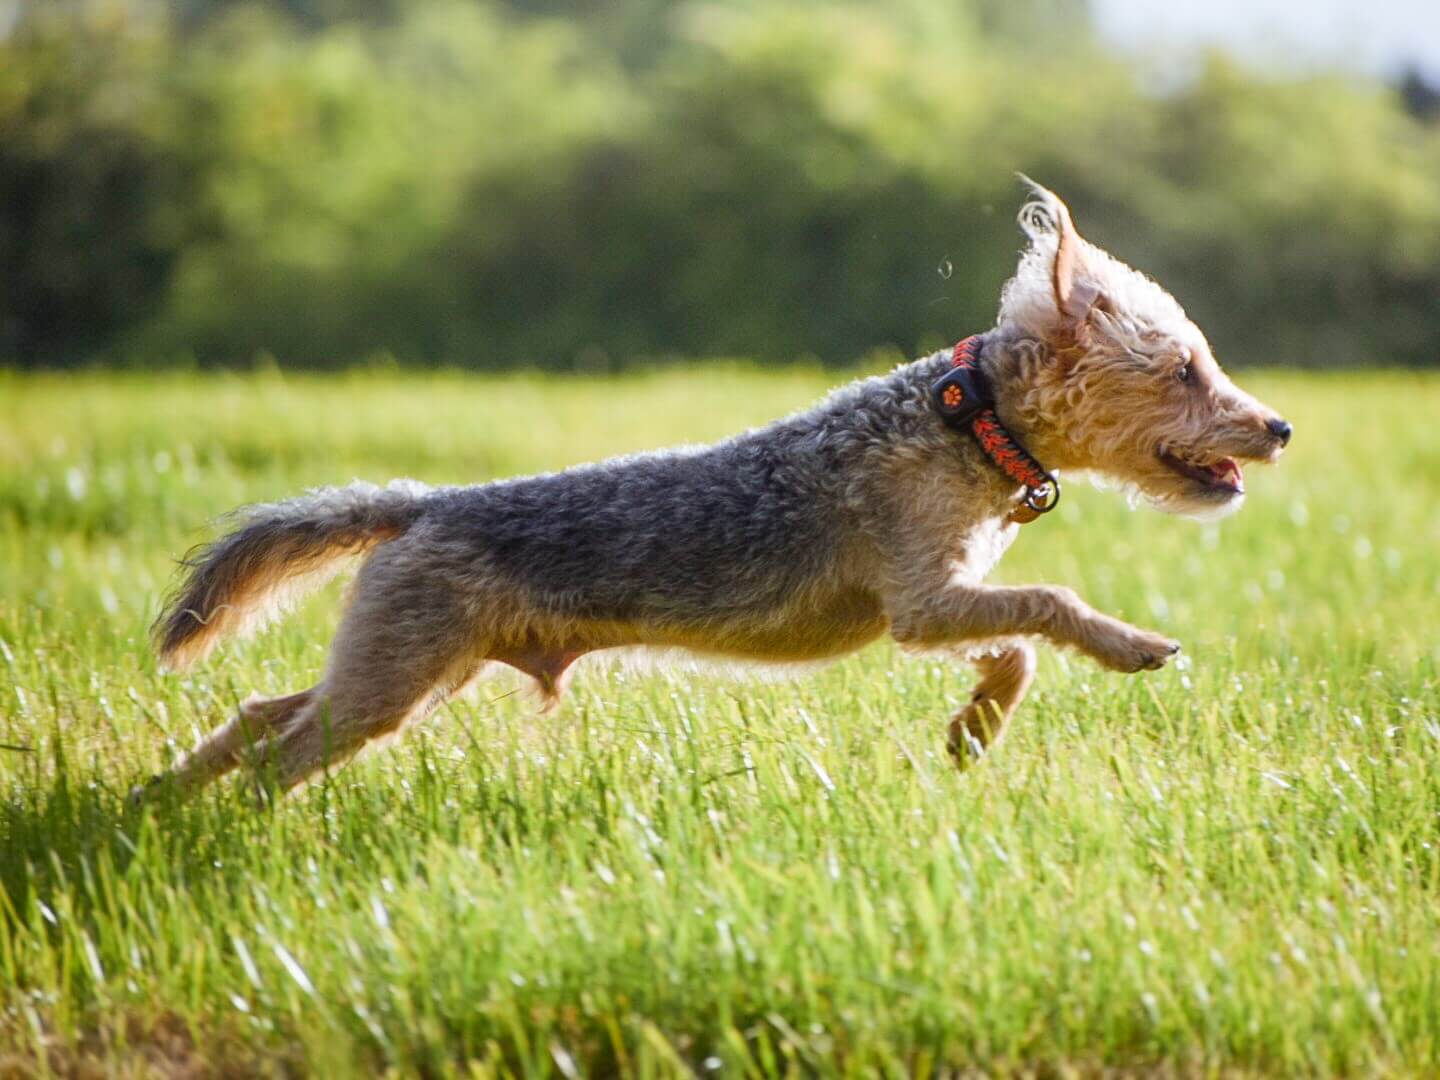 Terrier mixed breed dog running through a field